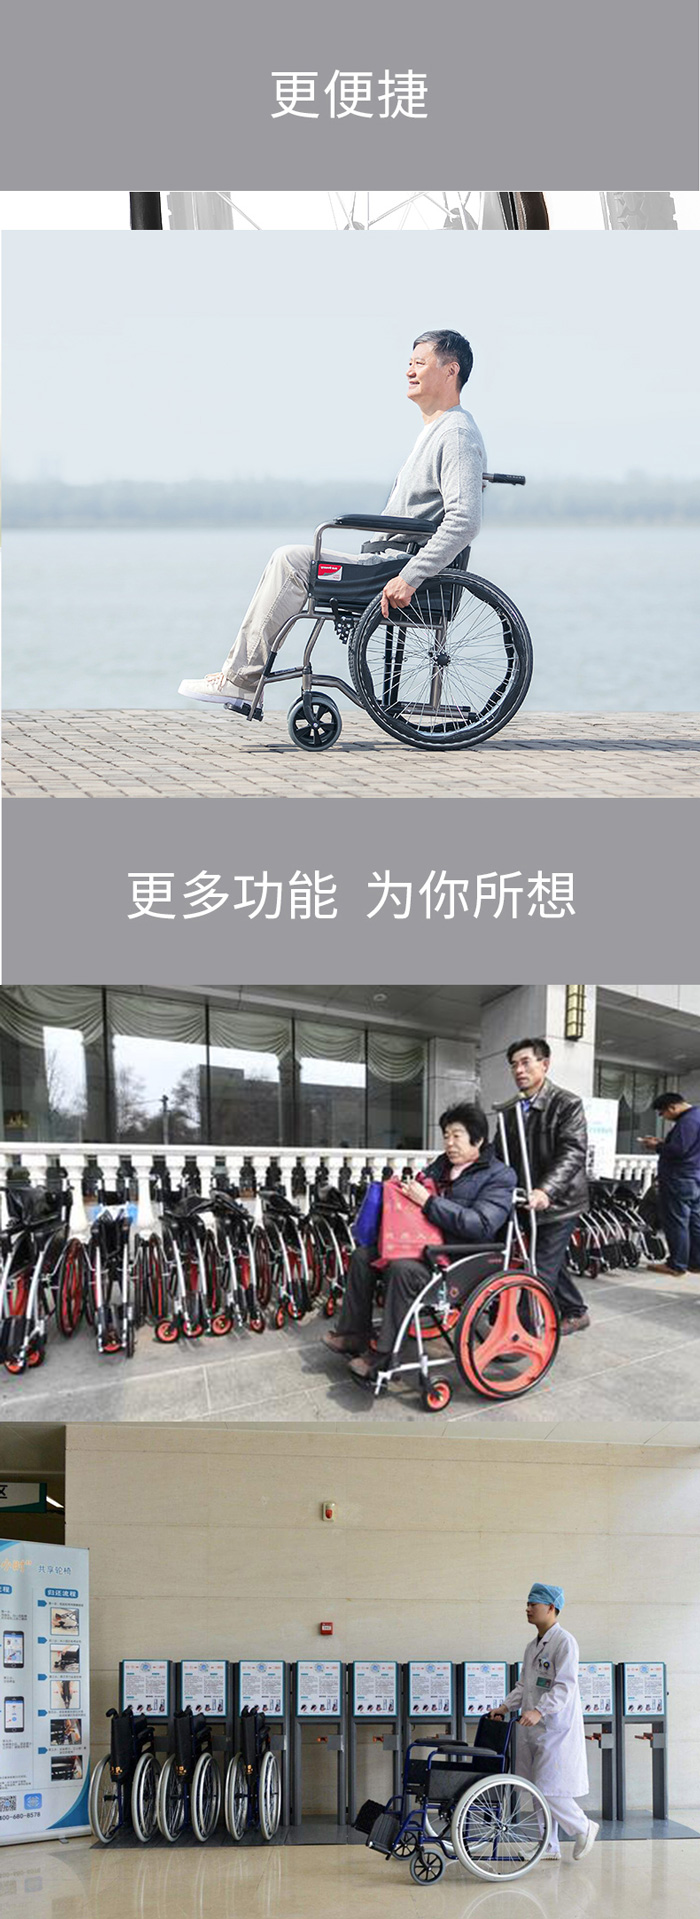 共享輪椅3.jpg